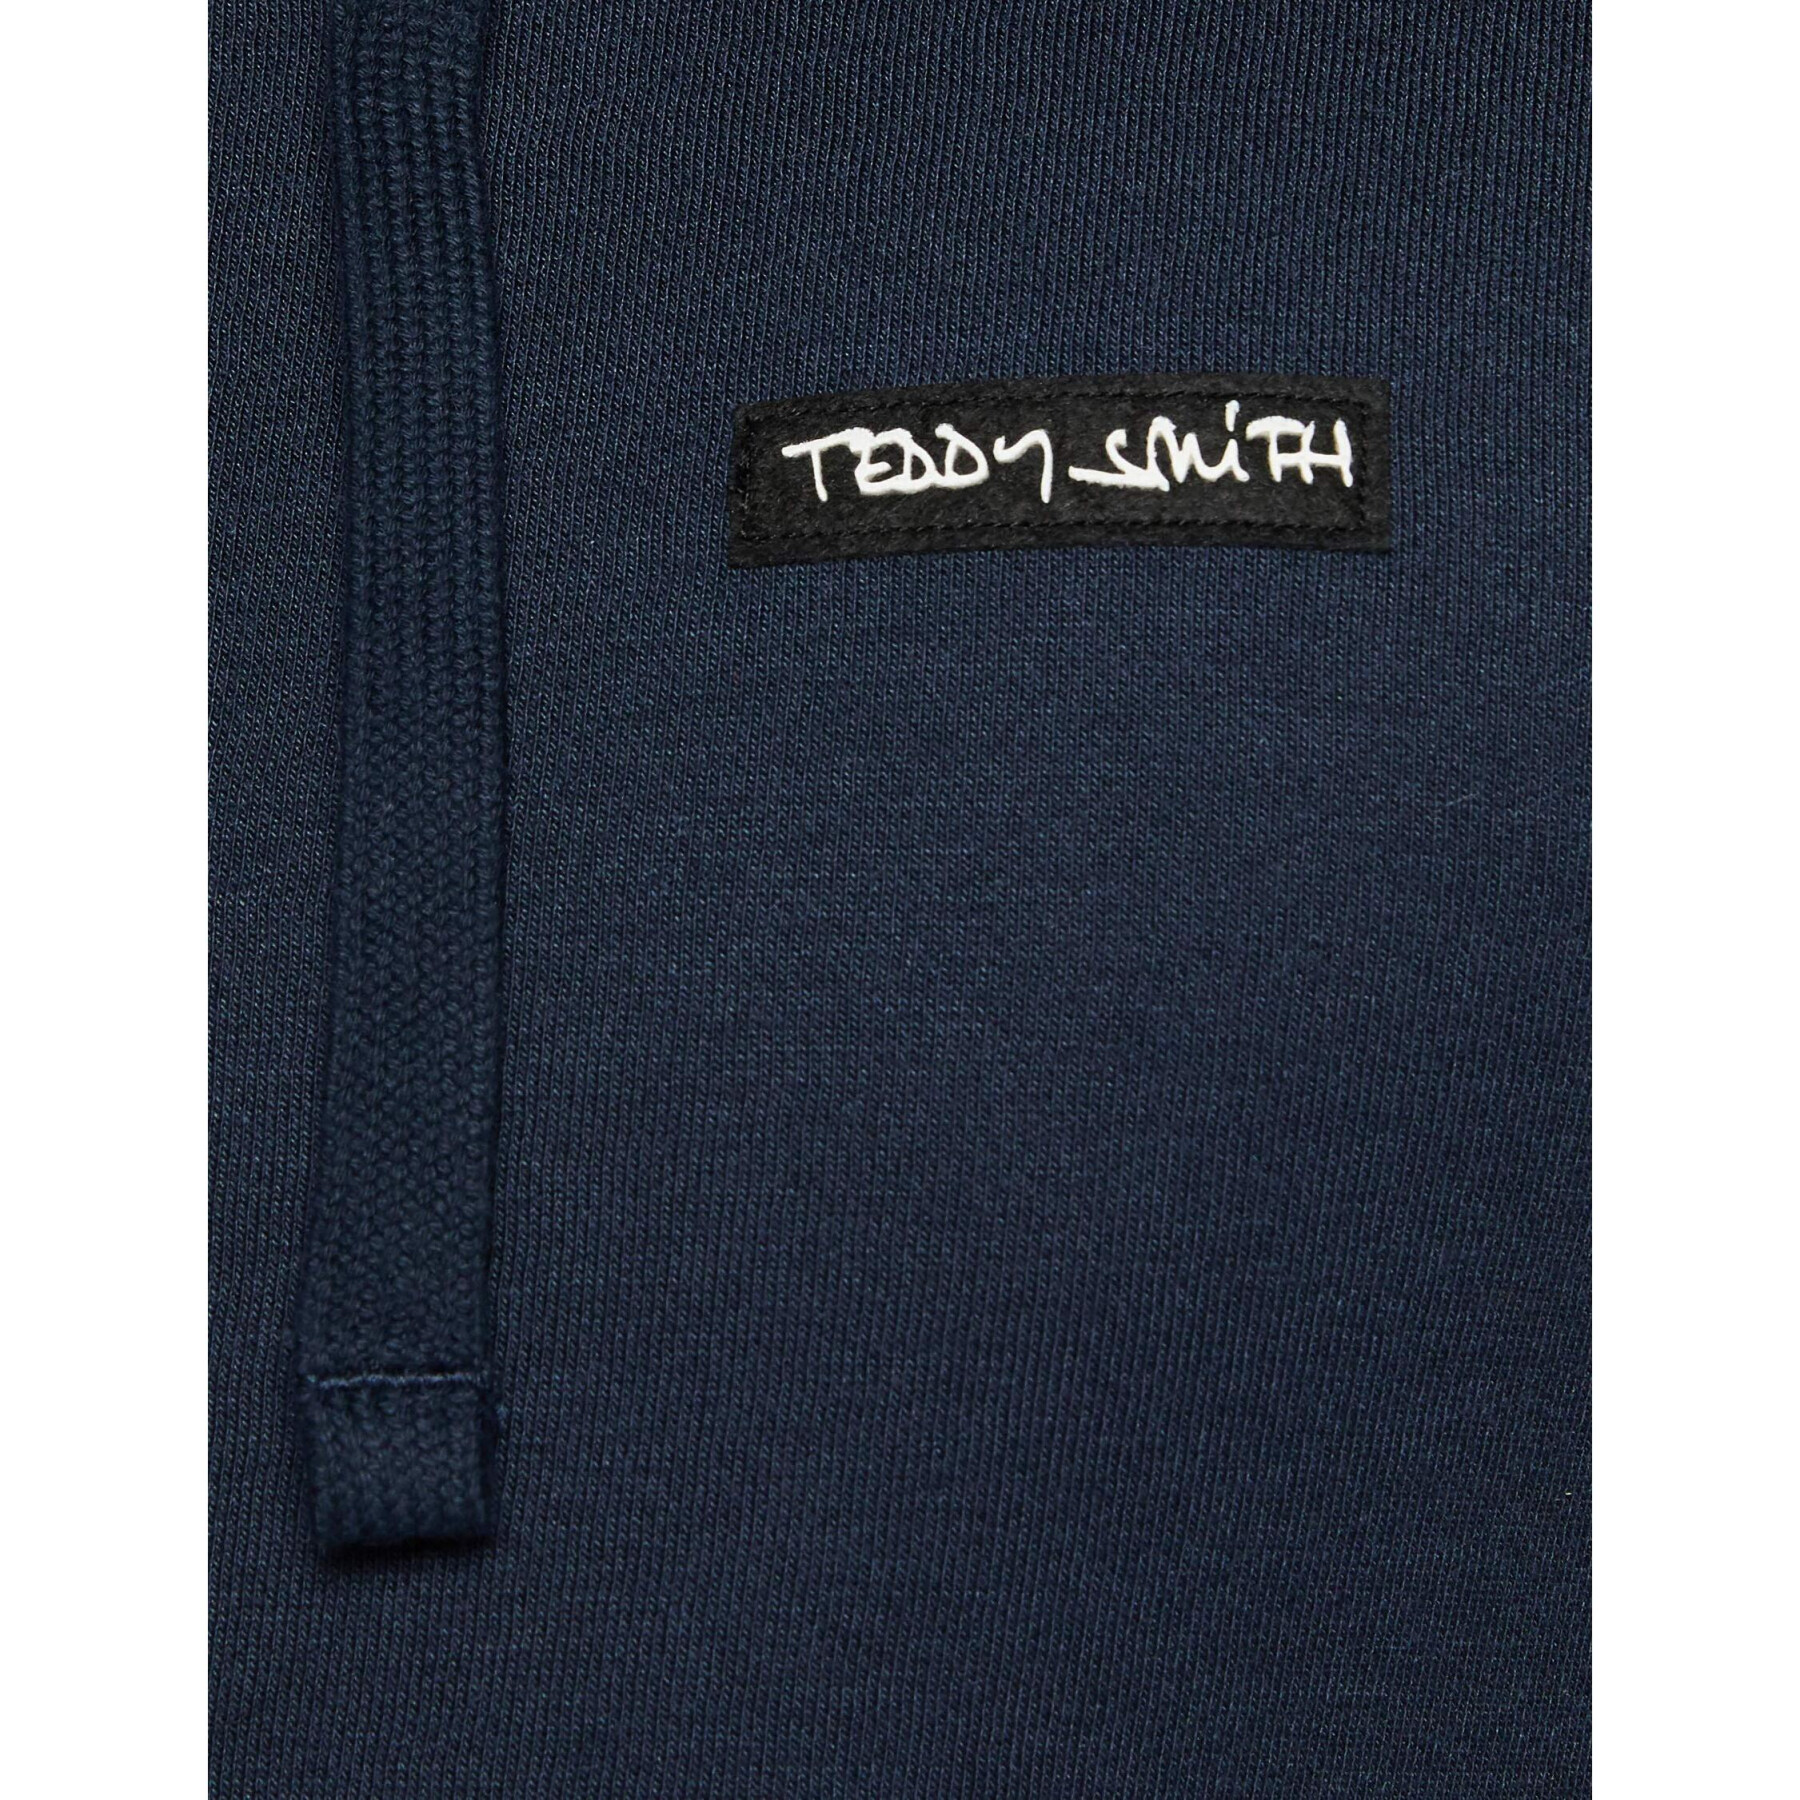 Hooded sweatshirt Teddy Smith Nark